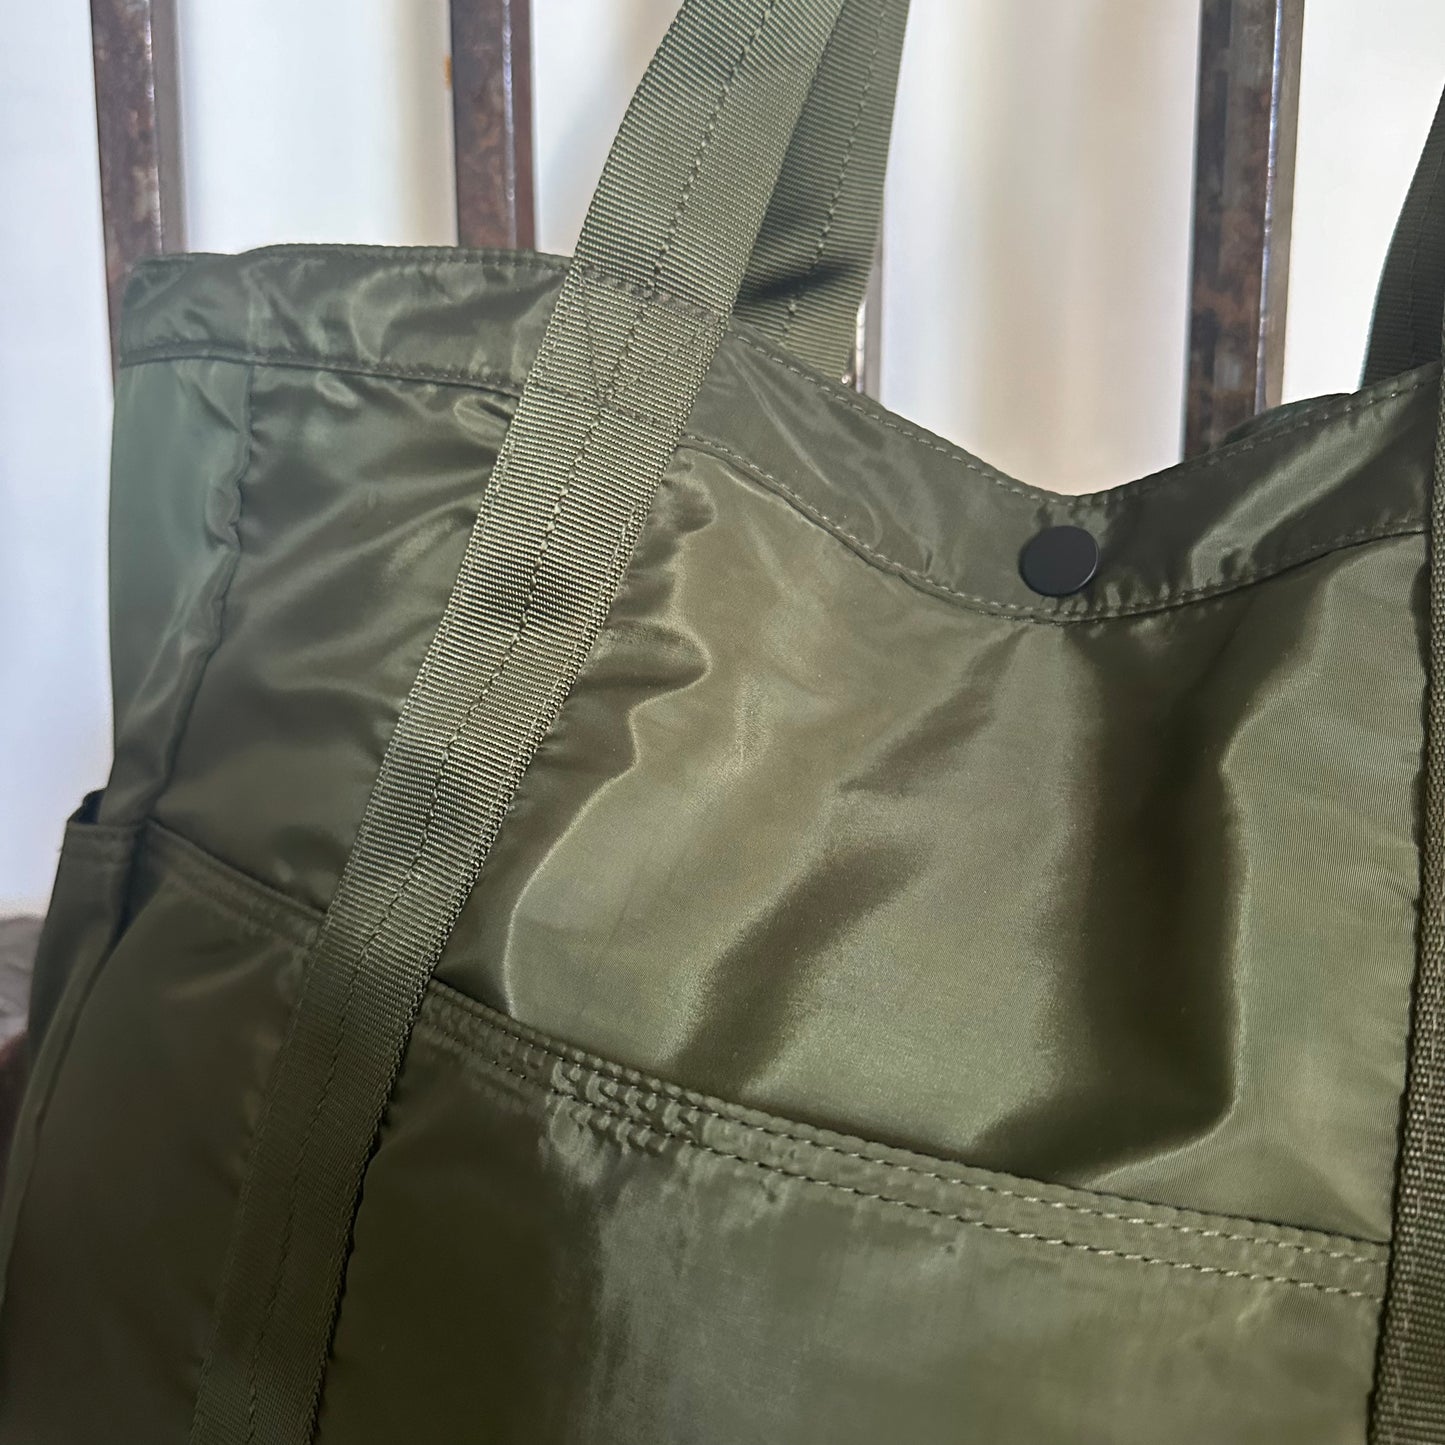 Sherpa 2.0 Bag in Olive